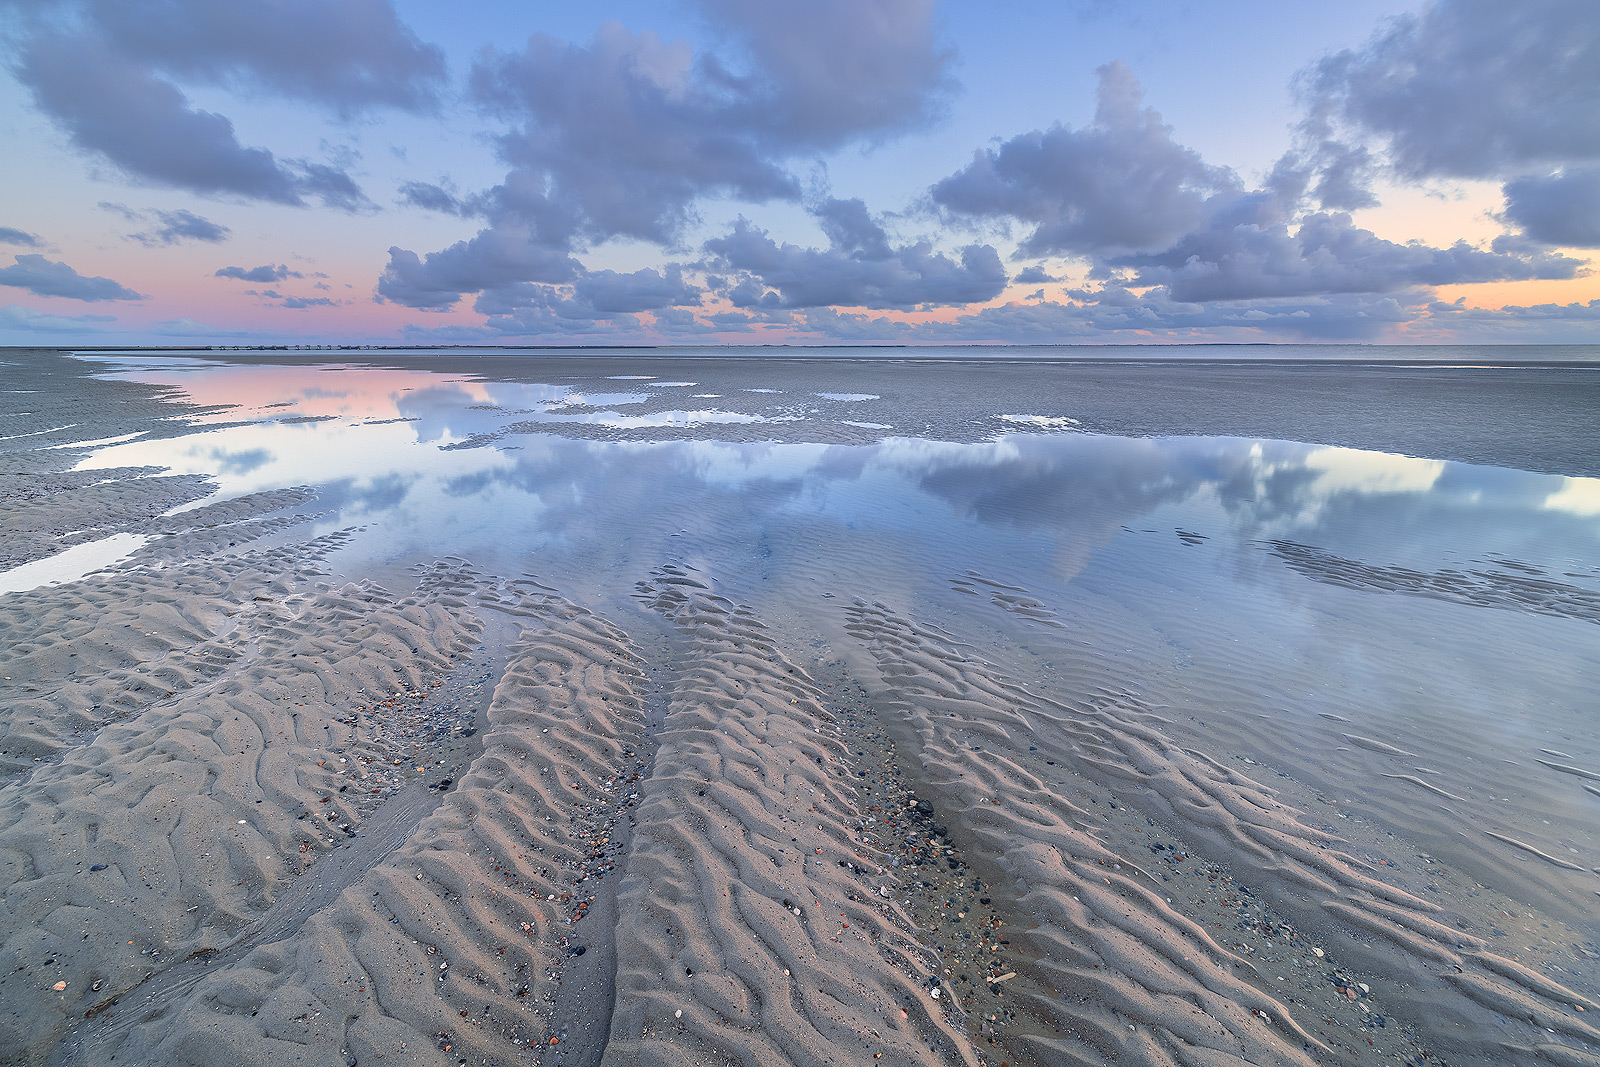 Eb op het strand van Westerschouwen op Schouwen-Duivenland in Zeeland. De wolken weerspiegelen in het water op het strand tijdens zonsondergang.